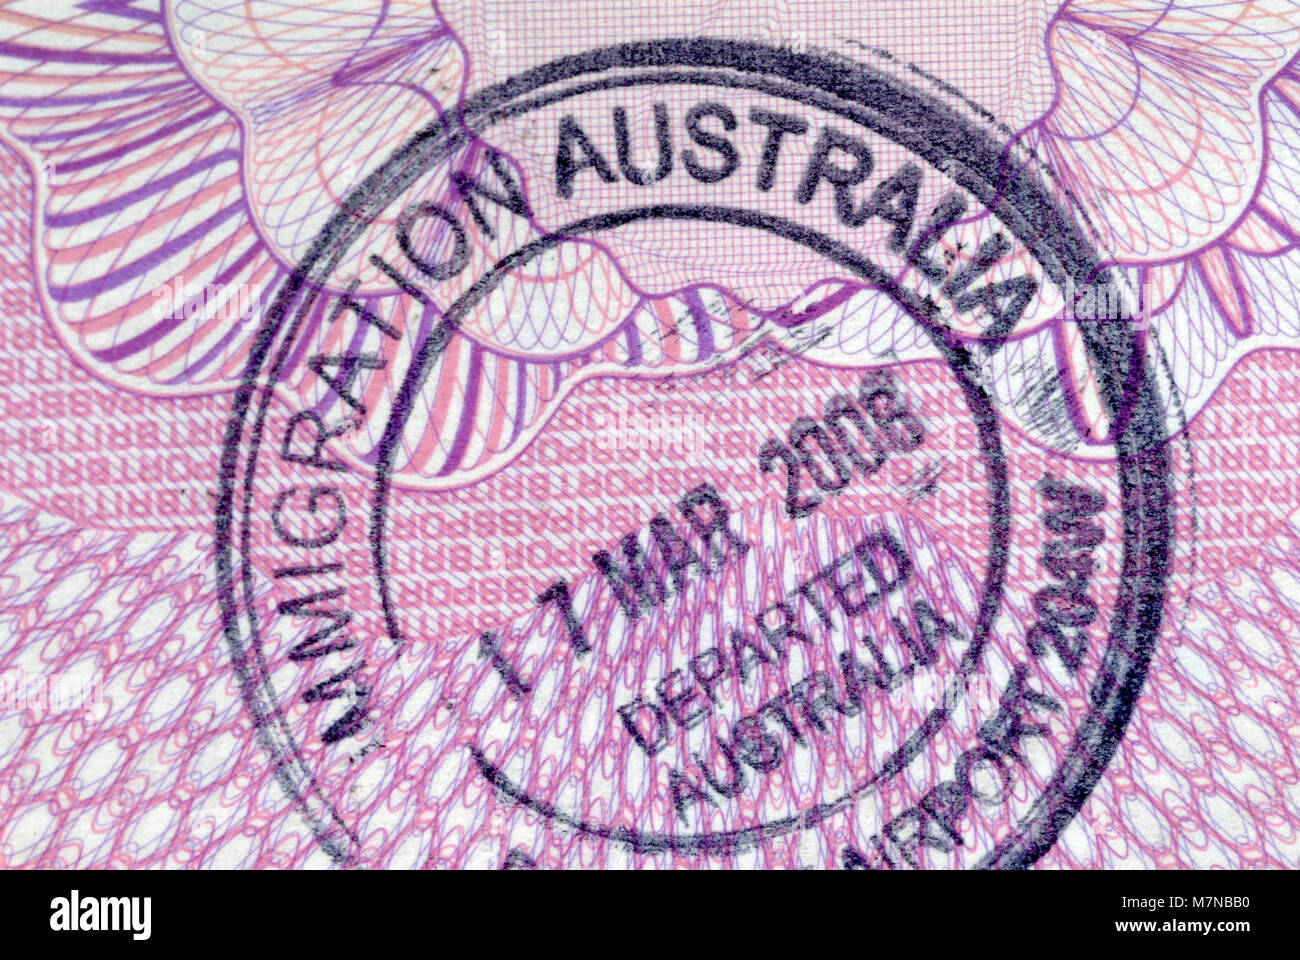 Australien Einwanderung Eingangsstempel auf der inneren Seite des Reisepasses. Stockfoto